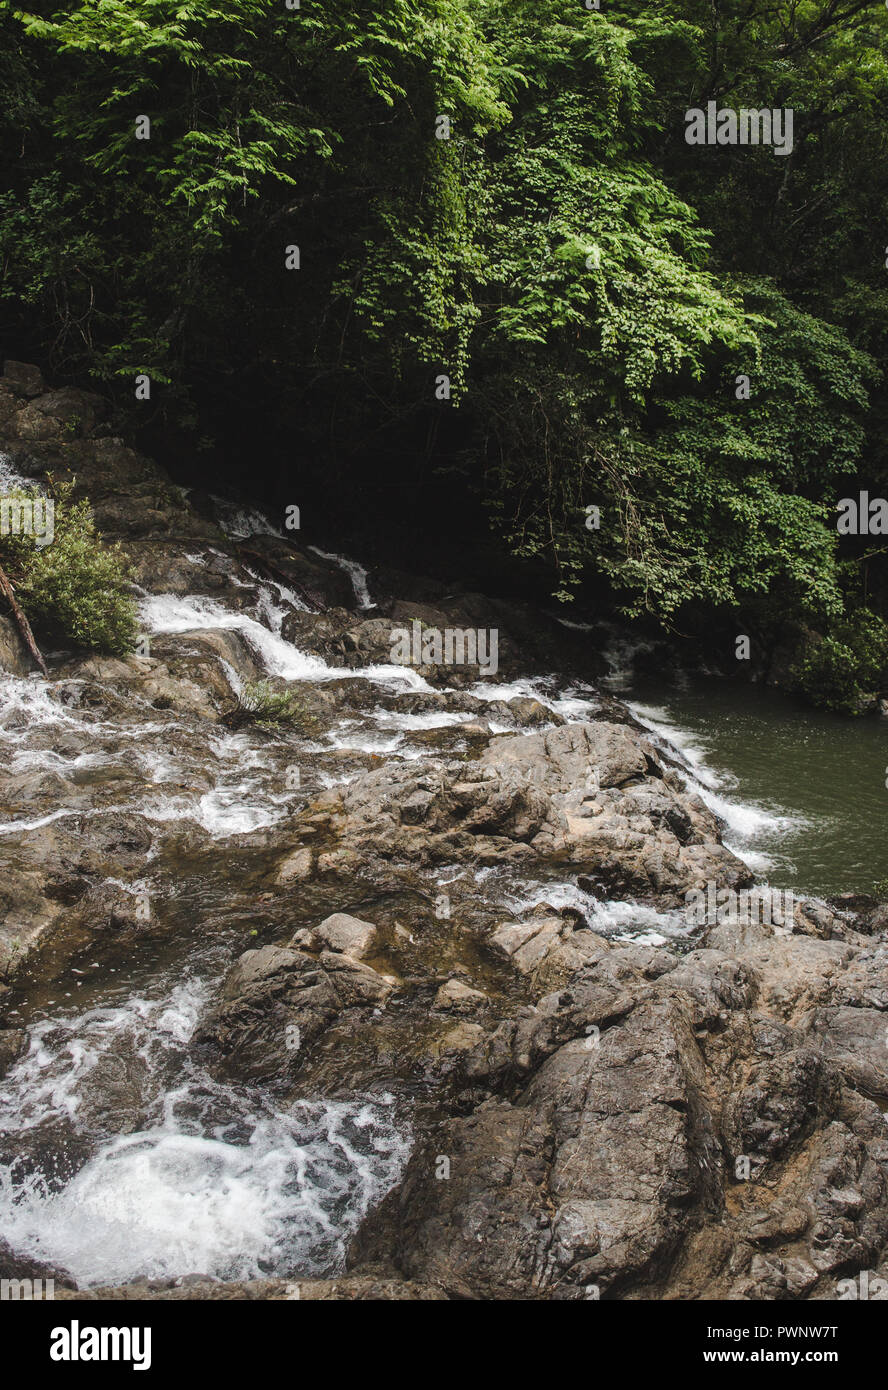 Flux rocheux se transforme en cascade qui alimente une piscine naturelle verte dans la forêt de Montezuma, Costa Rica Côte Ouest Banque D'Images